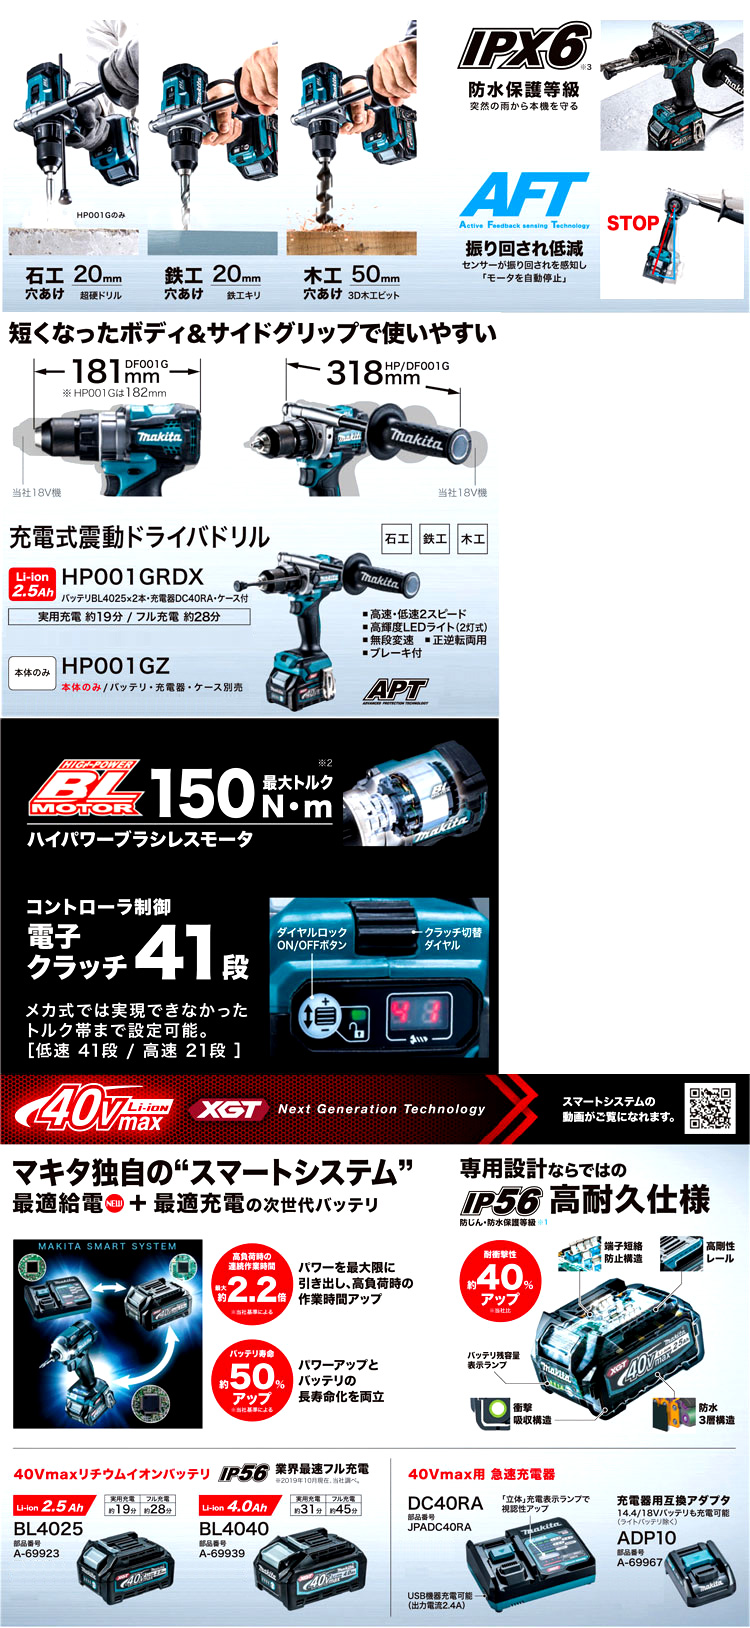 マキタ 36V【2.5Ah電池付】40Vmax震動ドライバードリル HP001GRDX ...